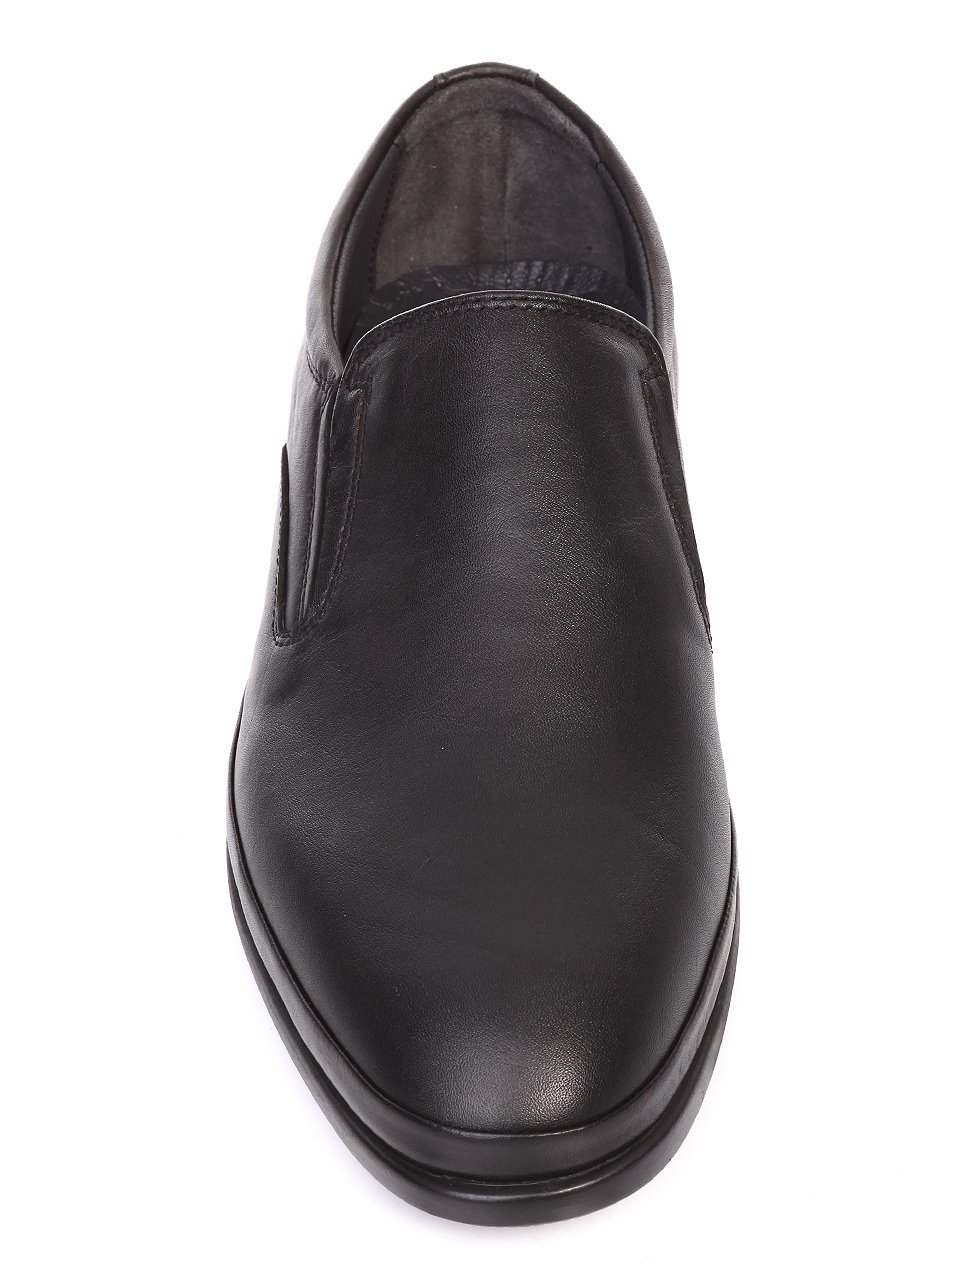 Официални обувки от естествена кожа в черно 7AT-16876 black